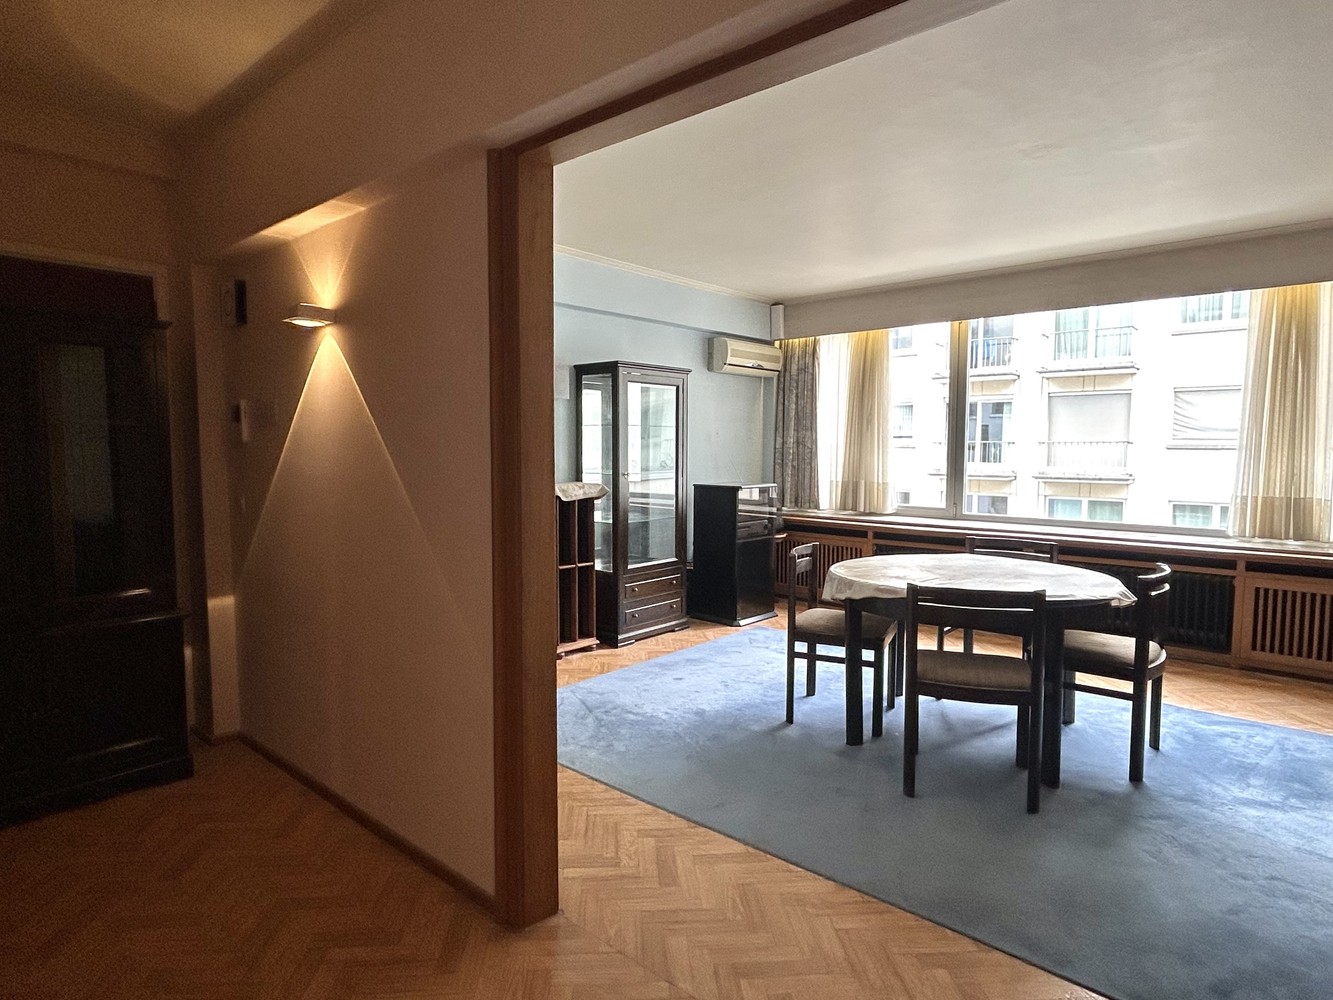 Ruim appartement met 2 slaapkamers in hartje Leuven! foto 4